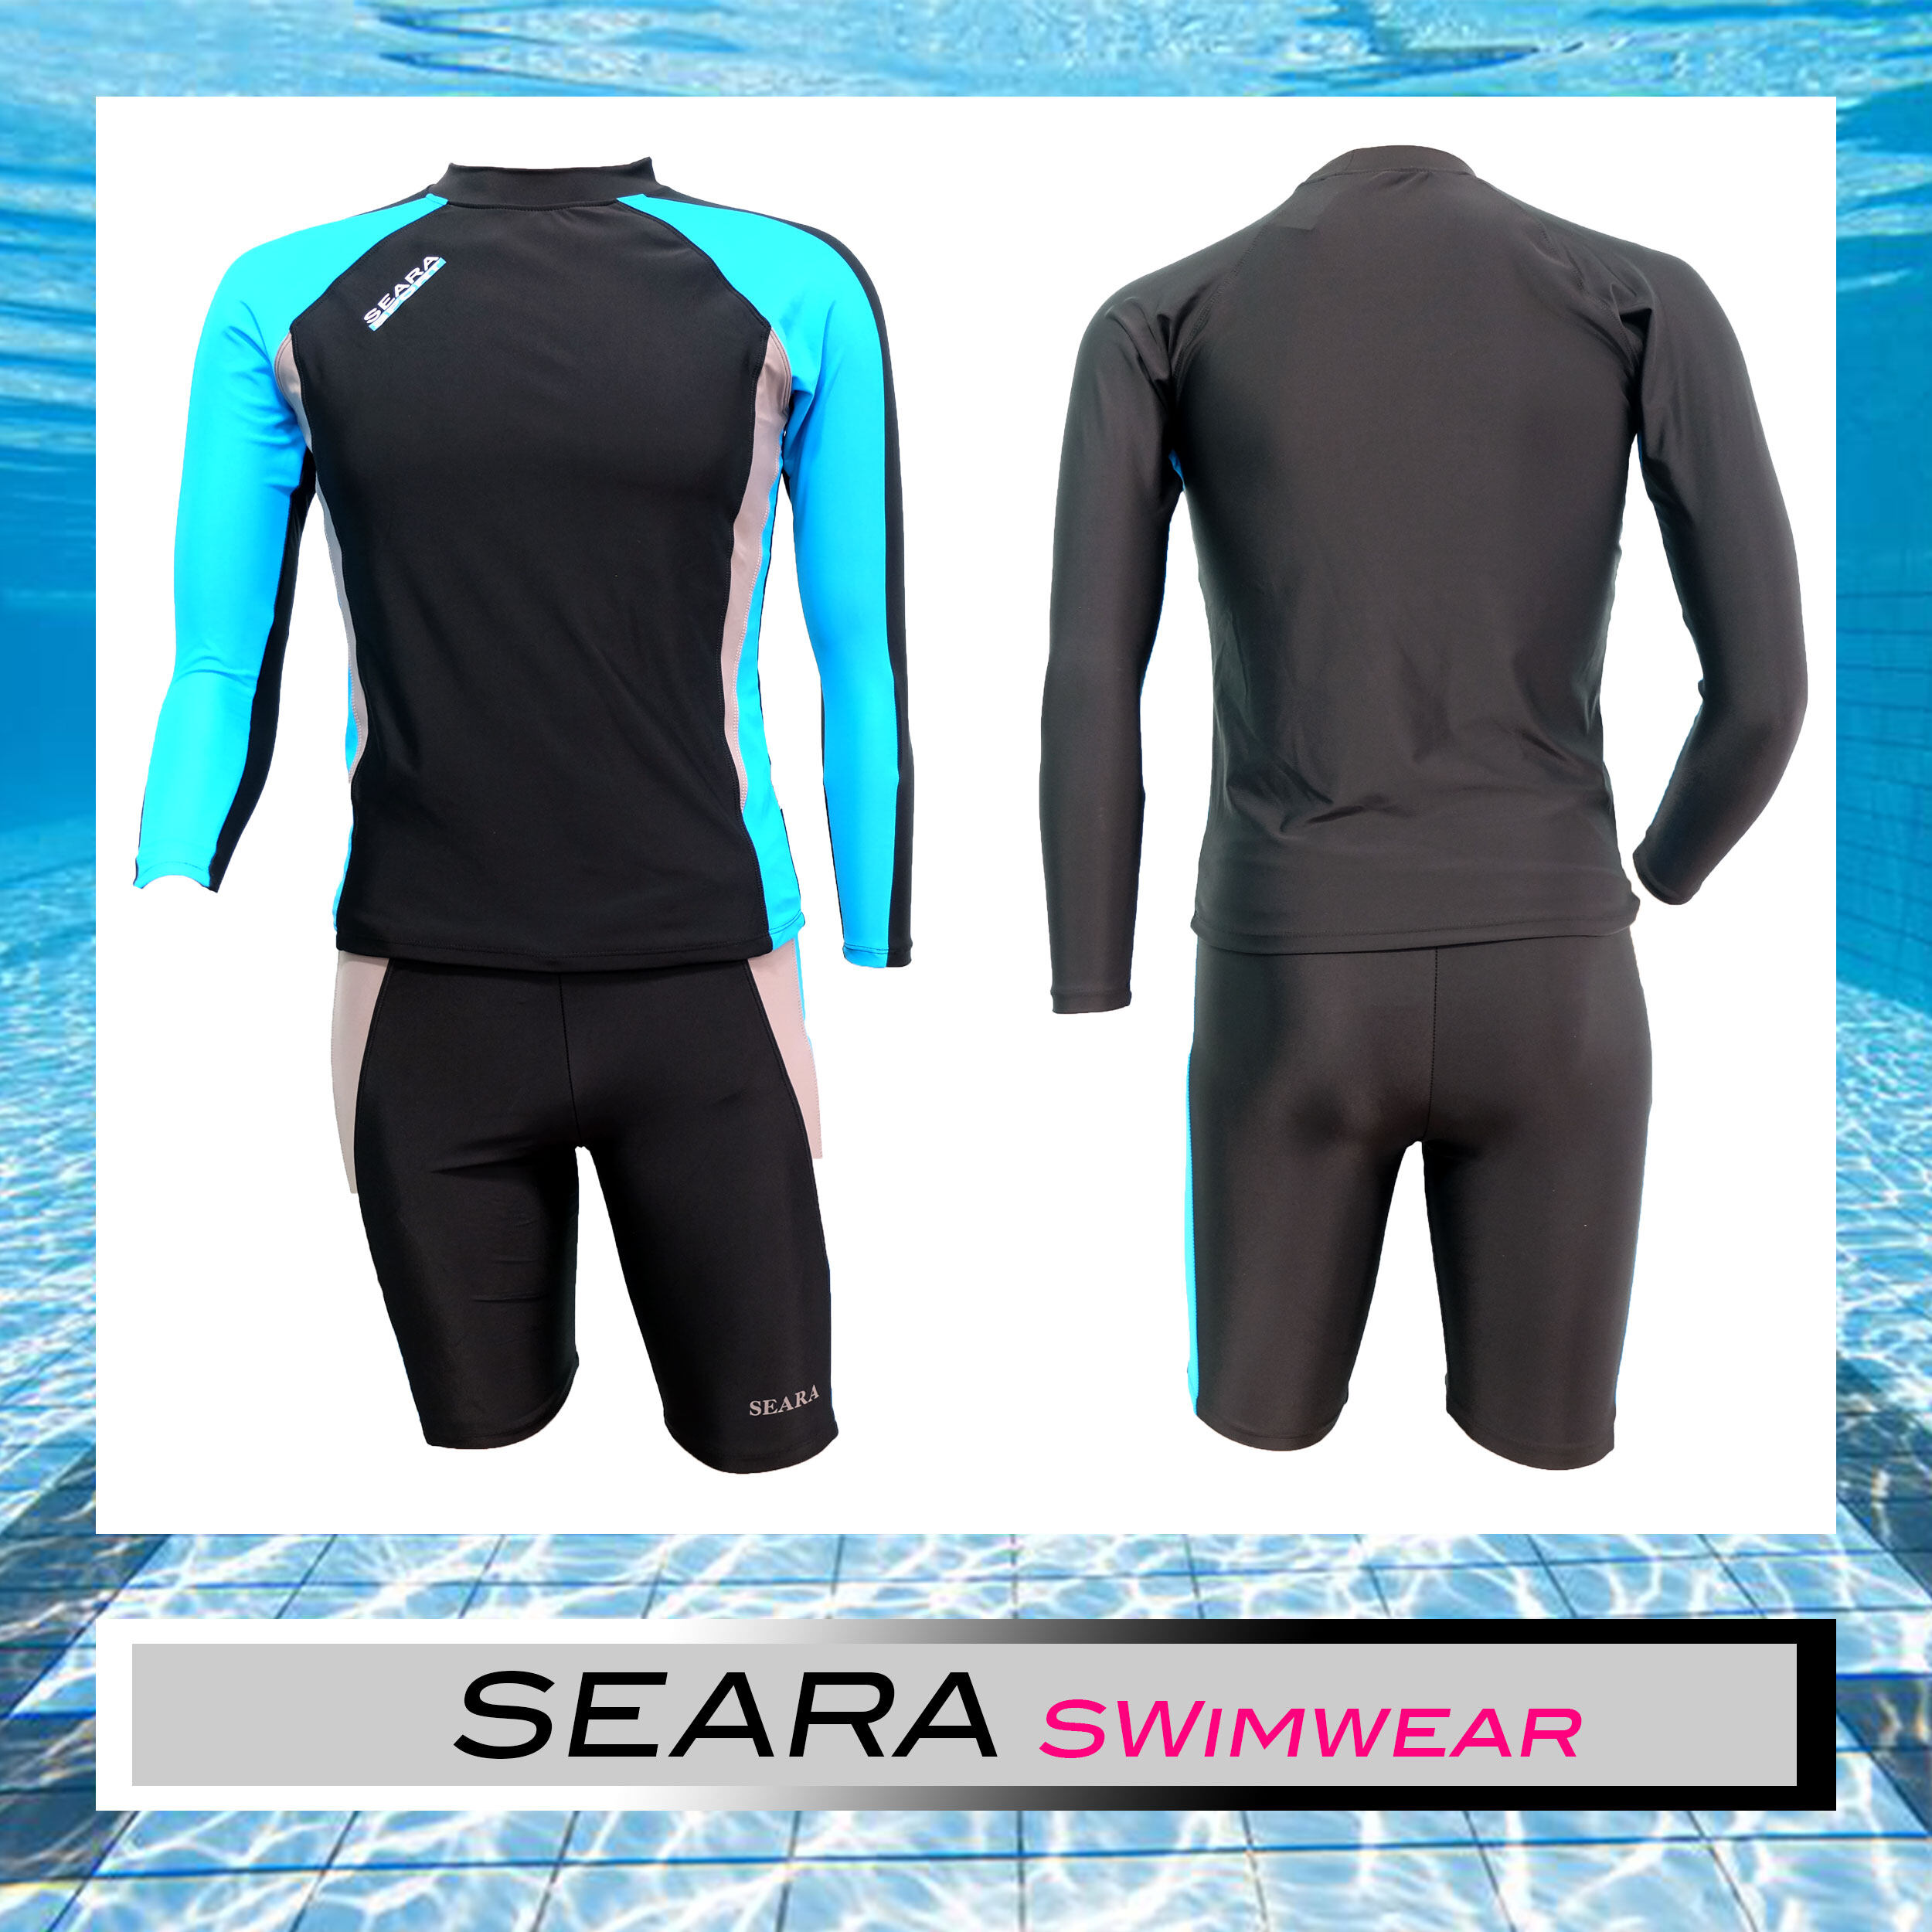 ชุดว่ายน้ำแขนยาว ขาสั้น  SEARA สีดำฟ้า ชุดว่ายน้ำชาย ชุดว่ายน้ำหญิง กันUV เสื้อว่ายน้ำ+กางเกงว่ายน้ำ ไซส์ S M L XL XXL 3XL